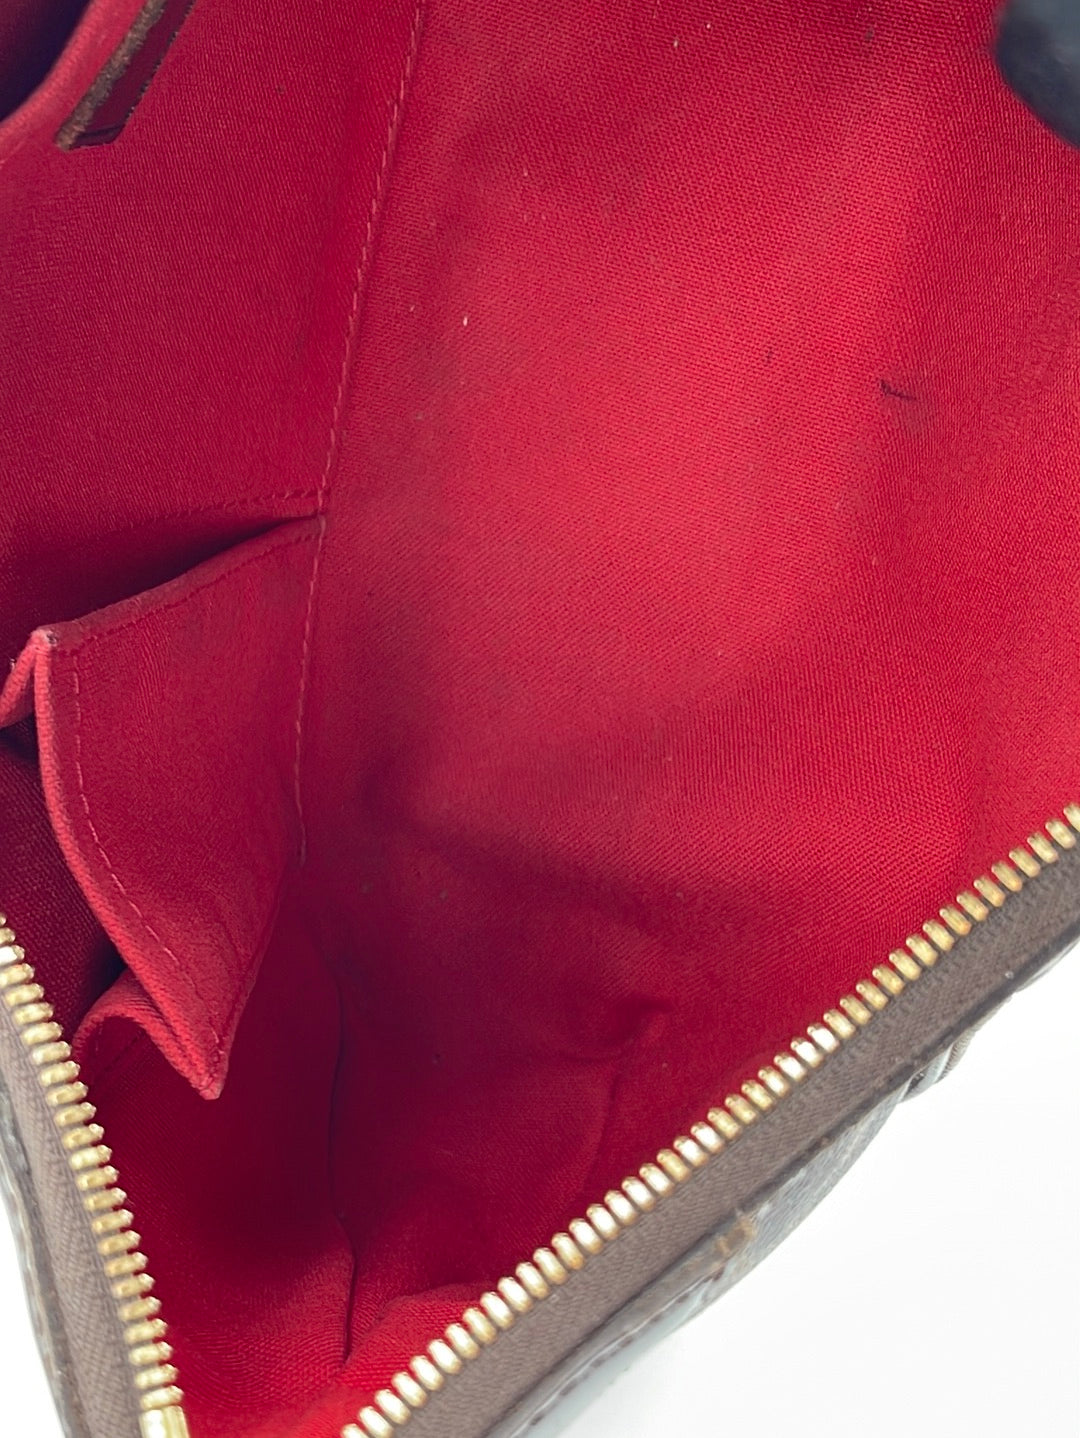 Thames cloth handbag Louis Vuitton Brown in Cloth - 35692377